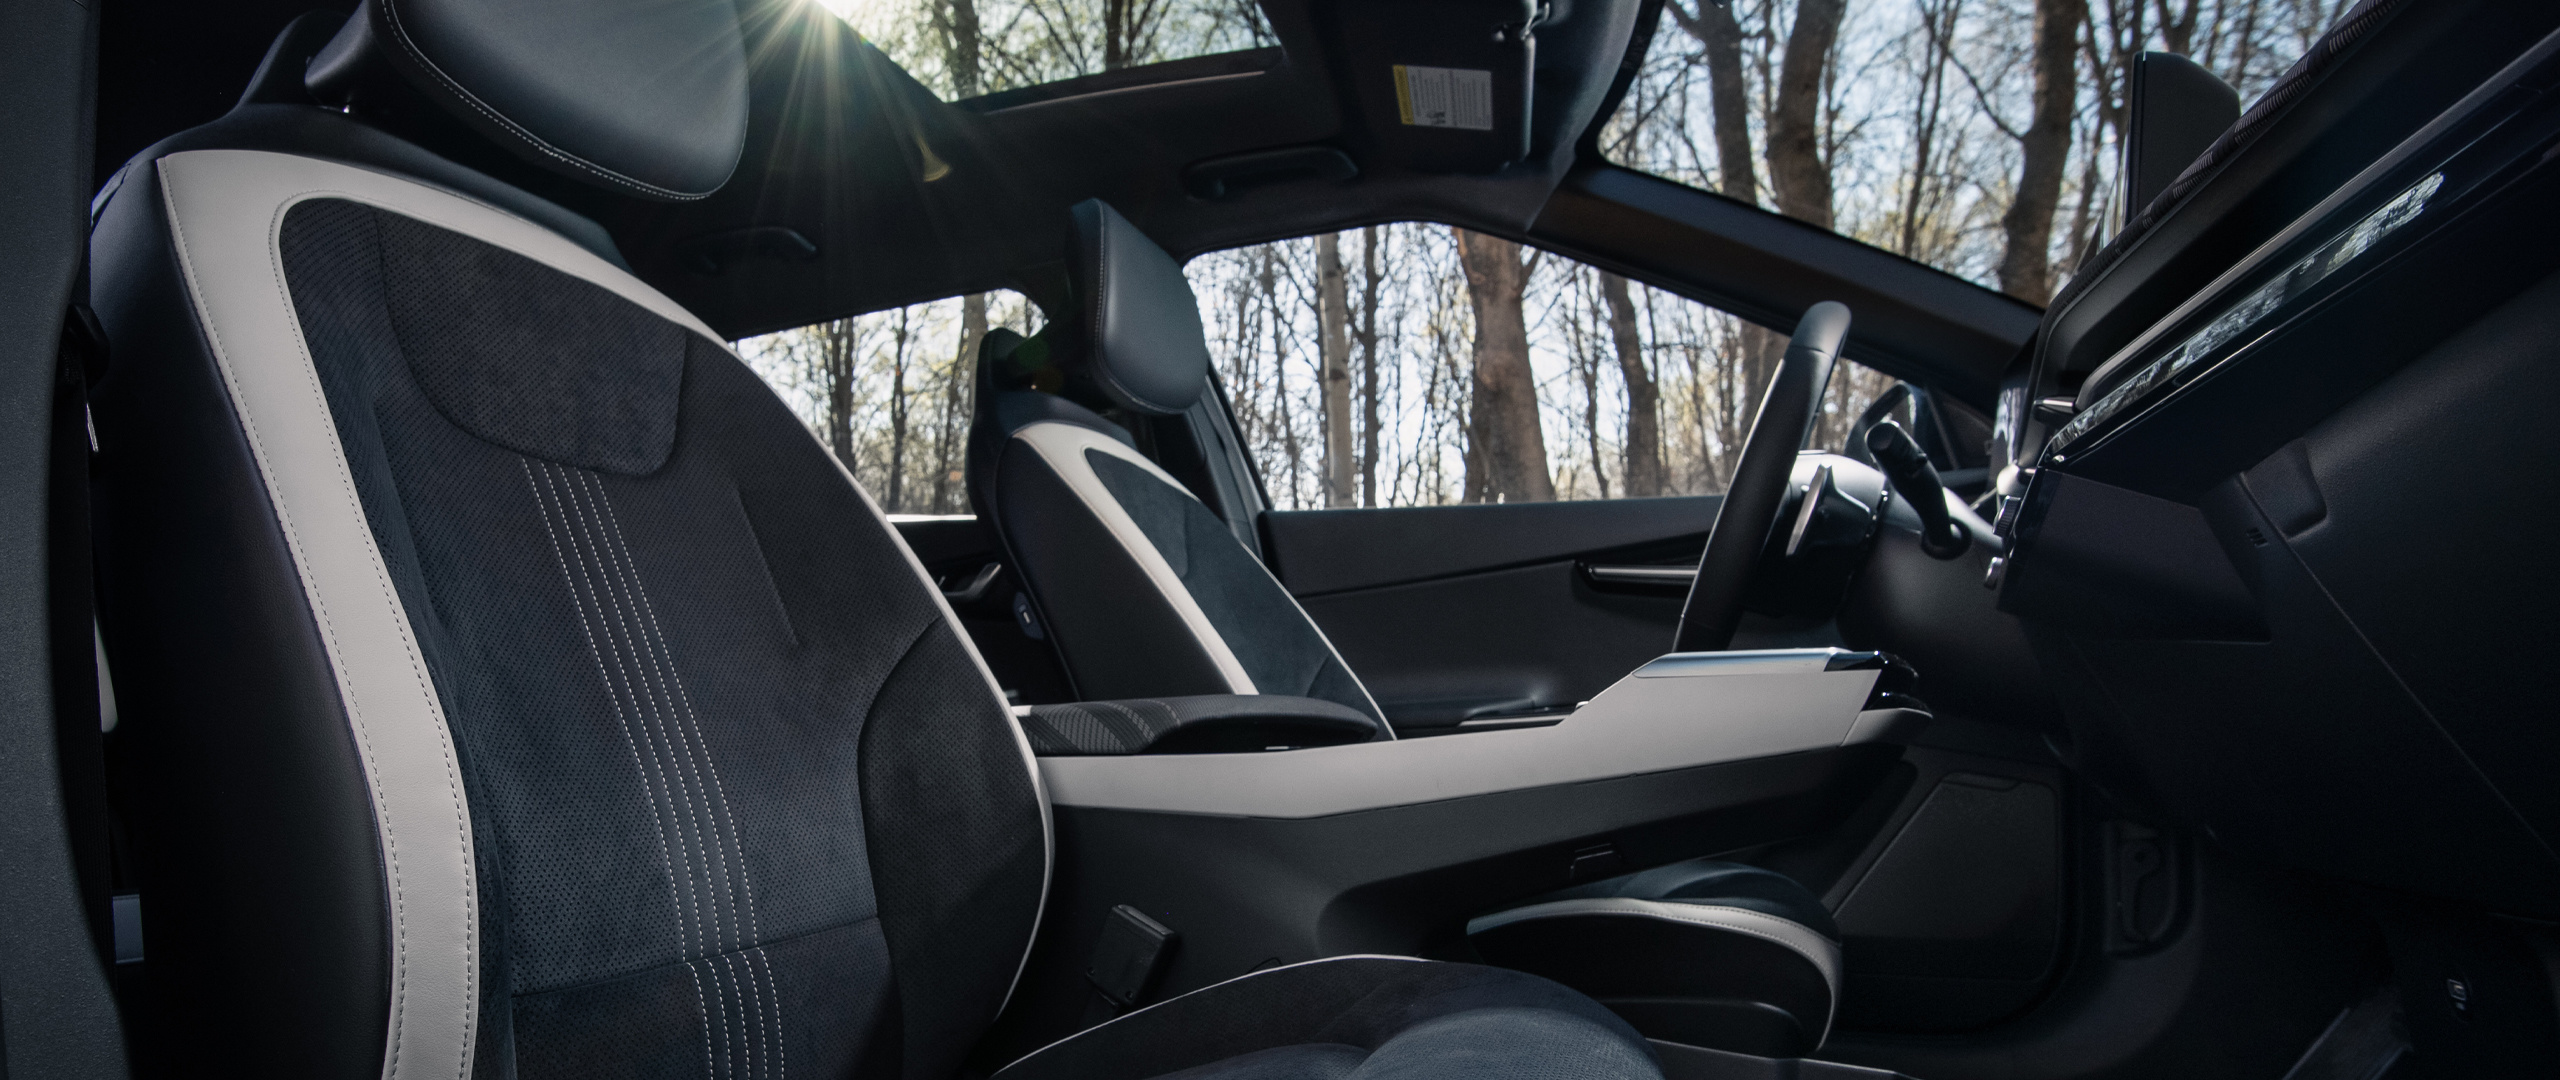 Asientos de cuero vegano y otros elementos de diseño sostenibles en el interior del Kia EV6 2022